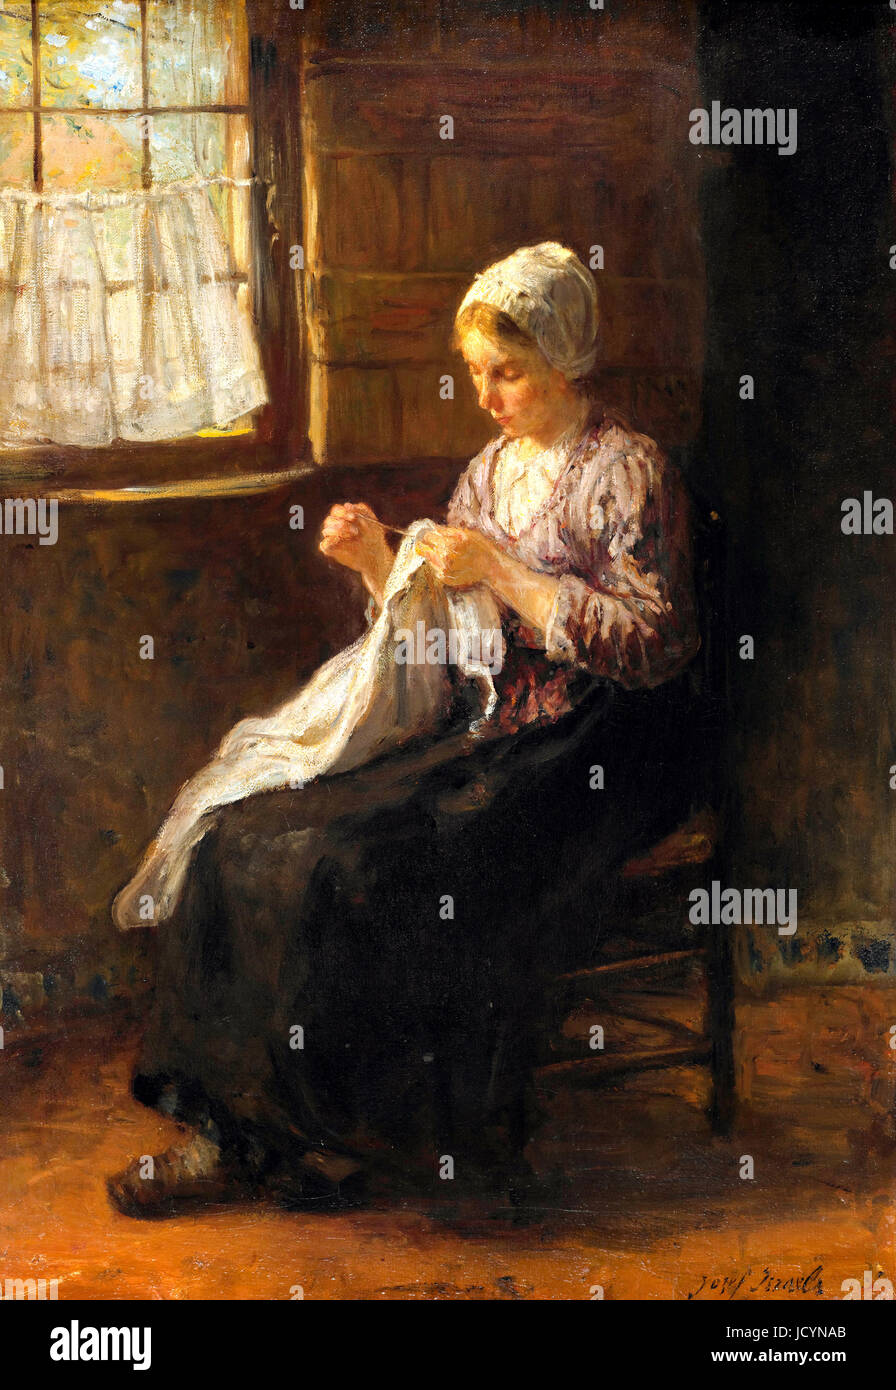 Jozef Israels, la joven costurera. Circa 1880. Óleo sobre lienzo. Gemeentemuseum Den Haag, La Haya, Países Bajos. Foto de stock